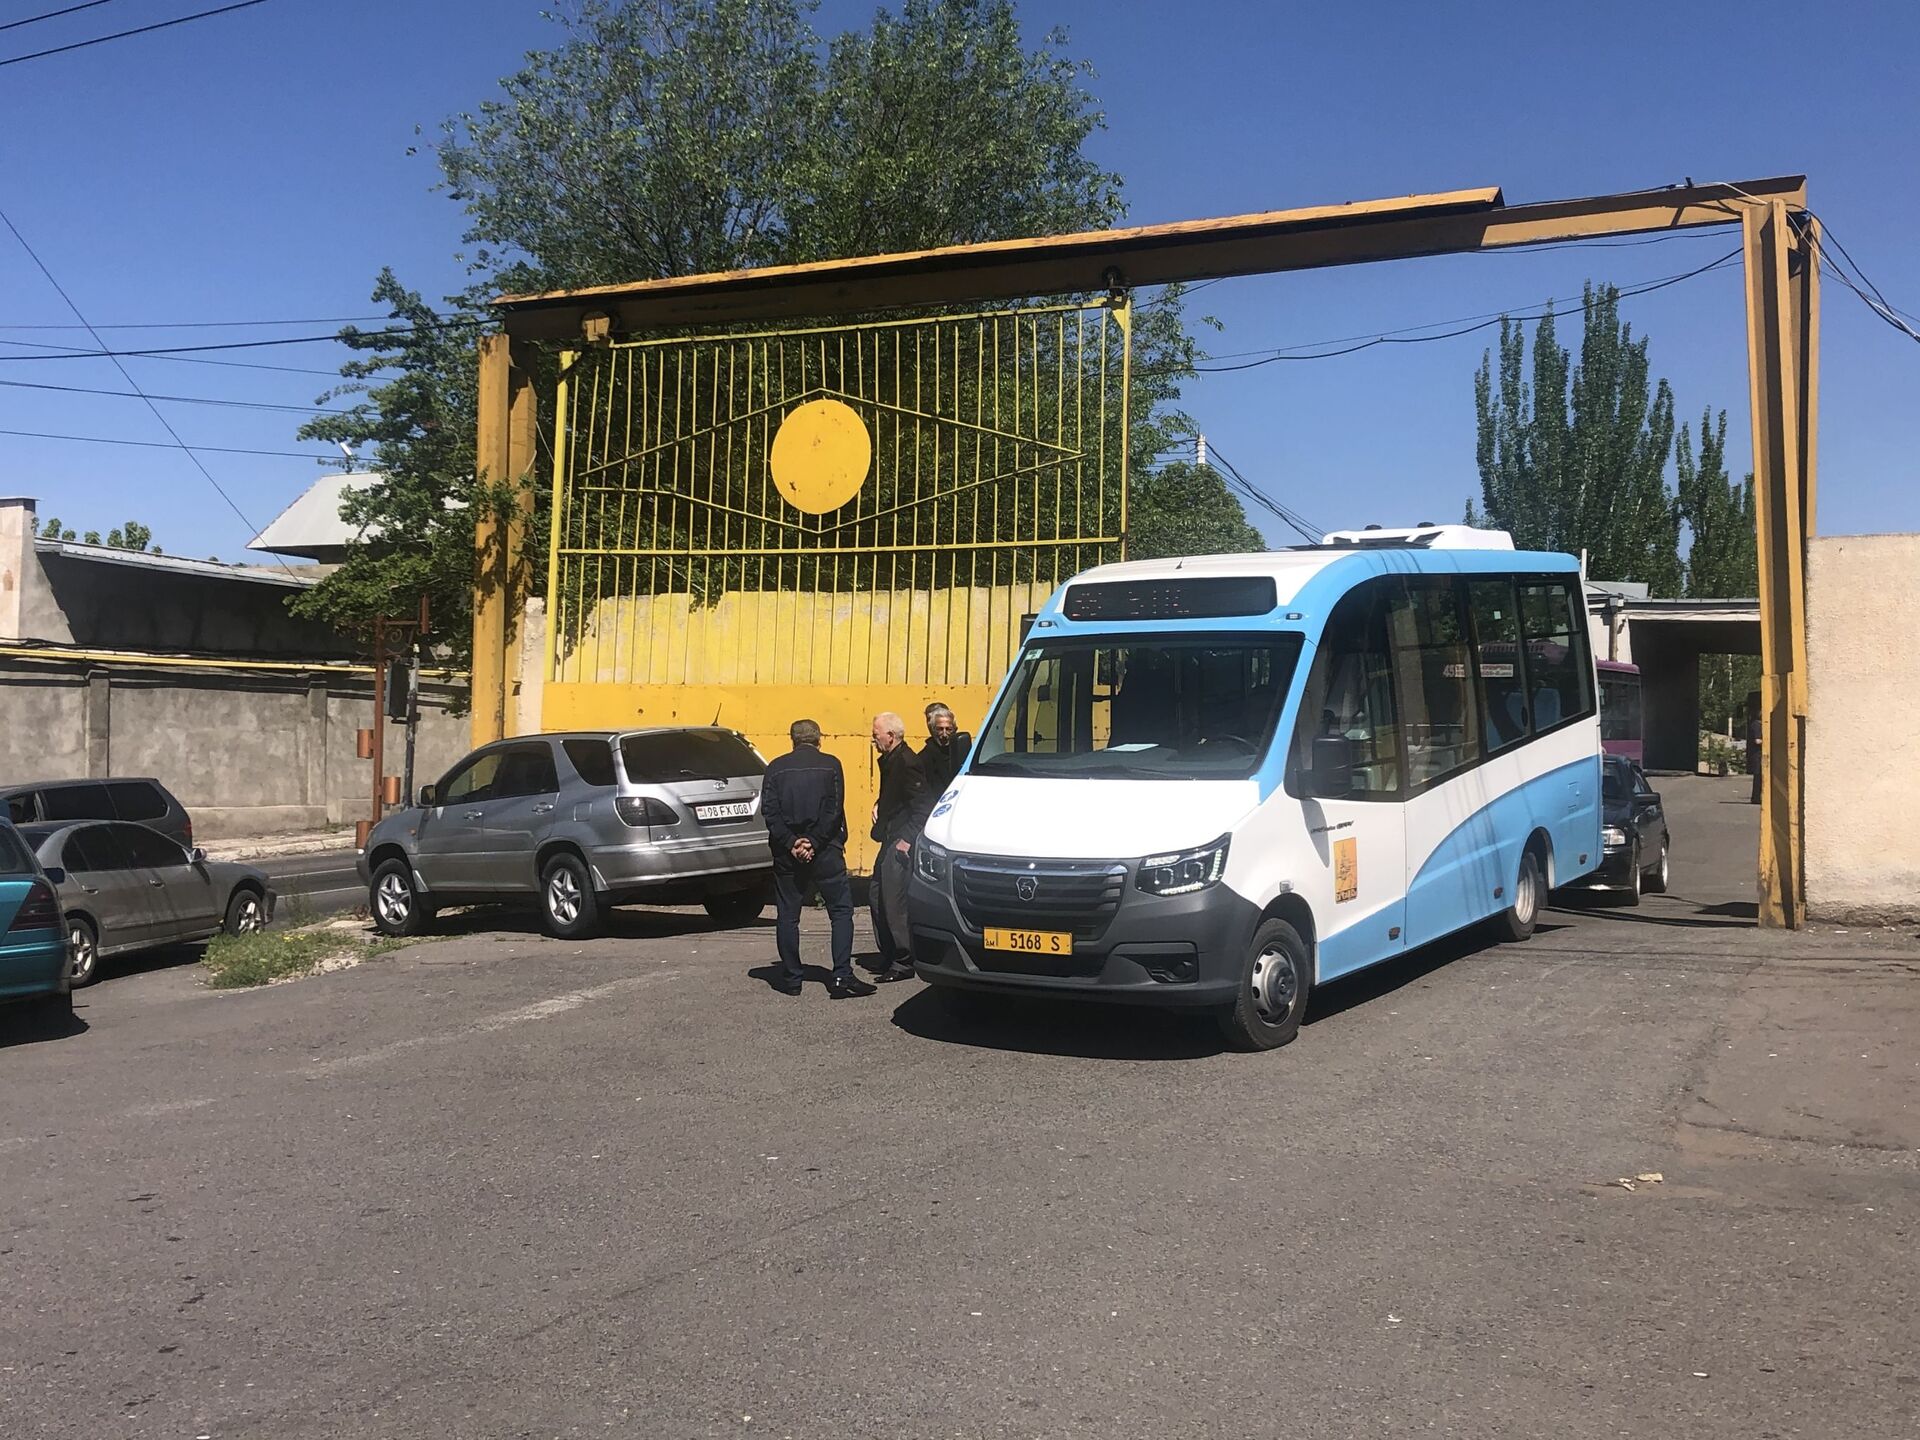 Բողոքի ակցիա Երևանում. ավտոբուսների վարորդները որոշել են աշխատանքի դուրս չգալ - Sputnik Արմենիա, 1920, 12.05.2021